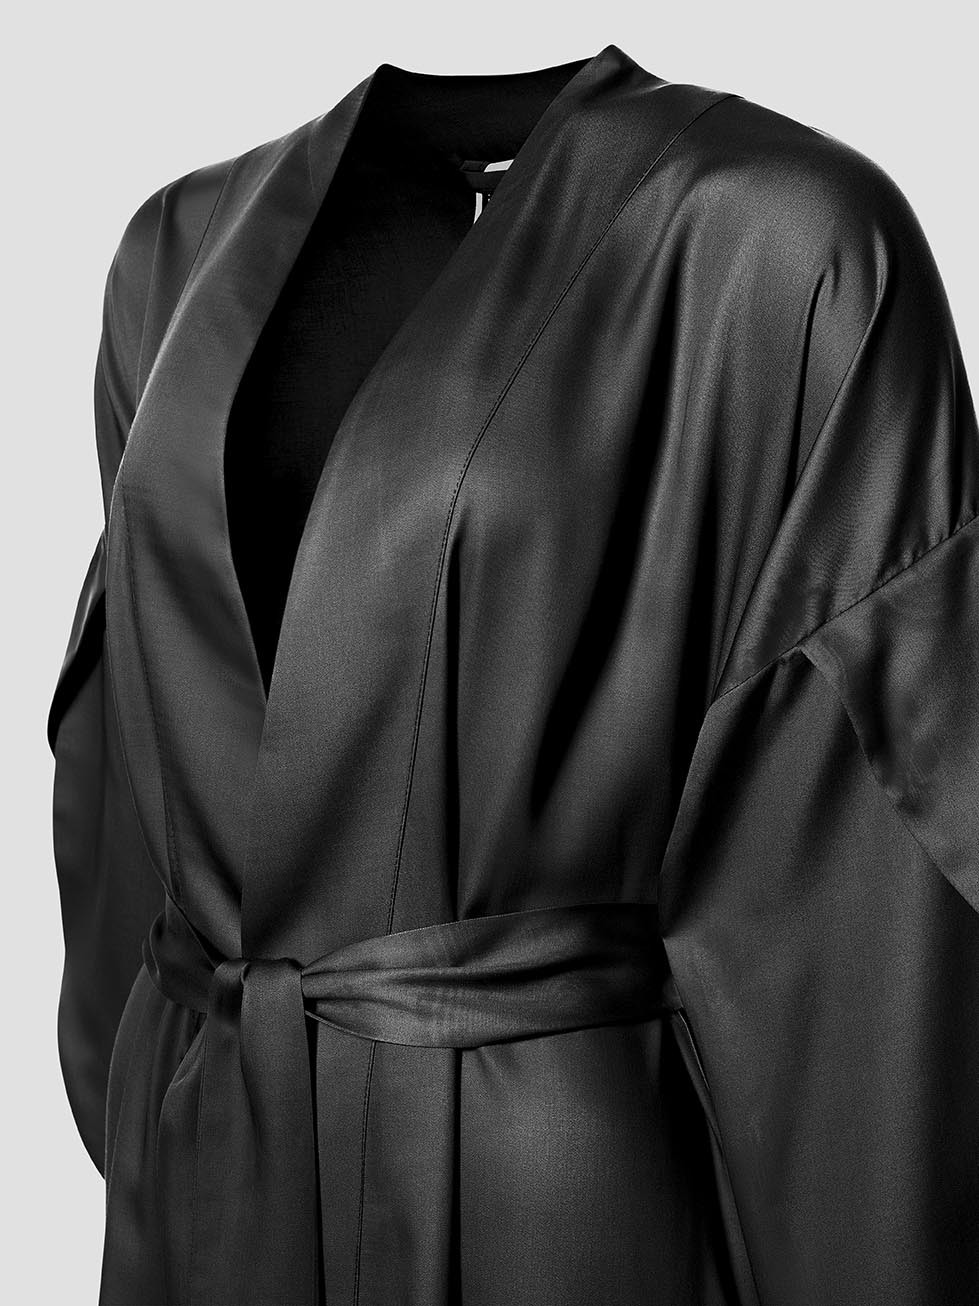 Женские халаты Женская домашняя одежда Кимоно Наоми  - Фото 3